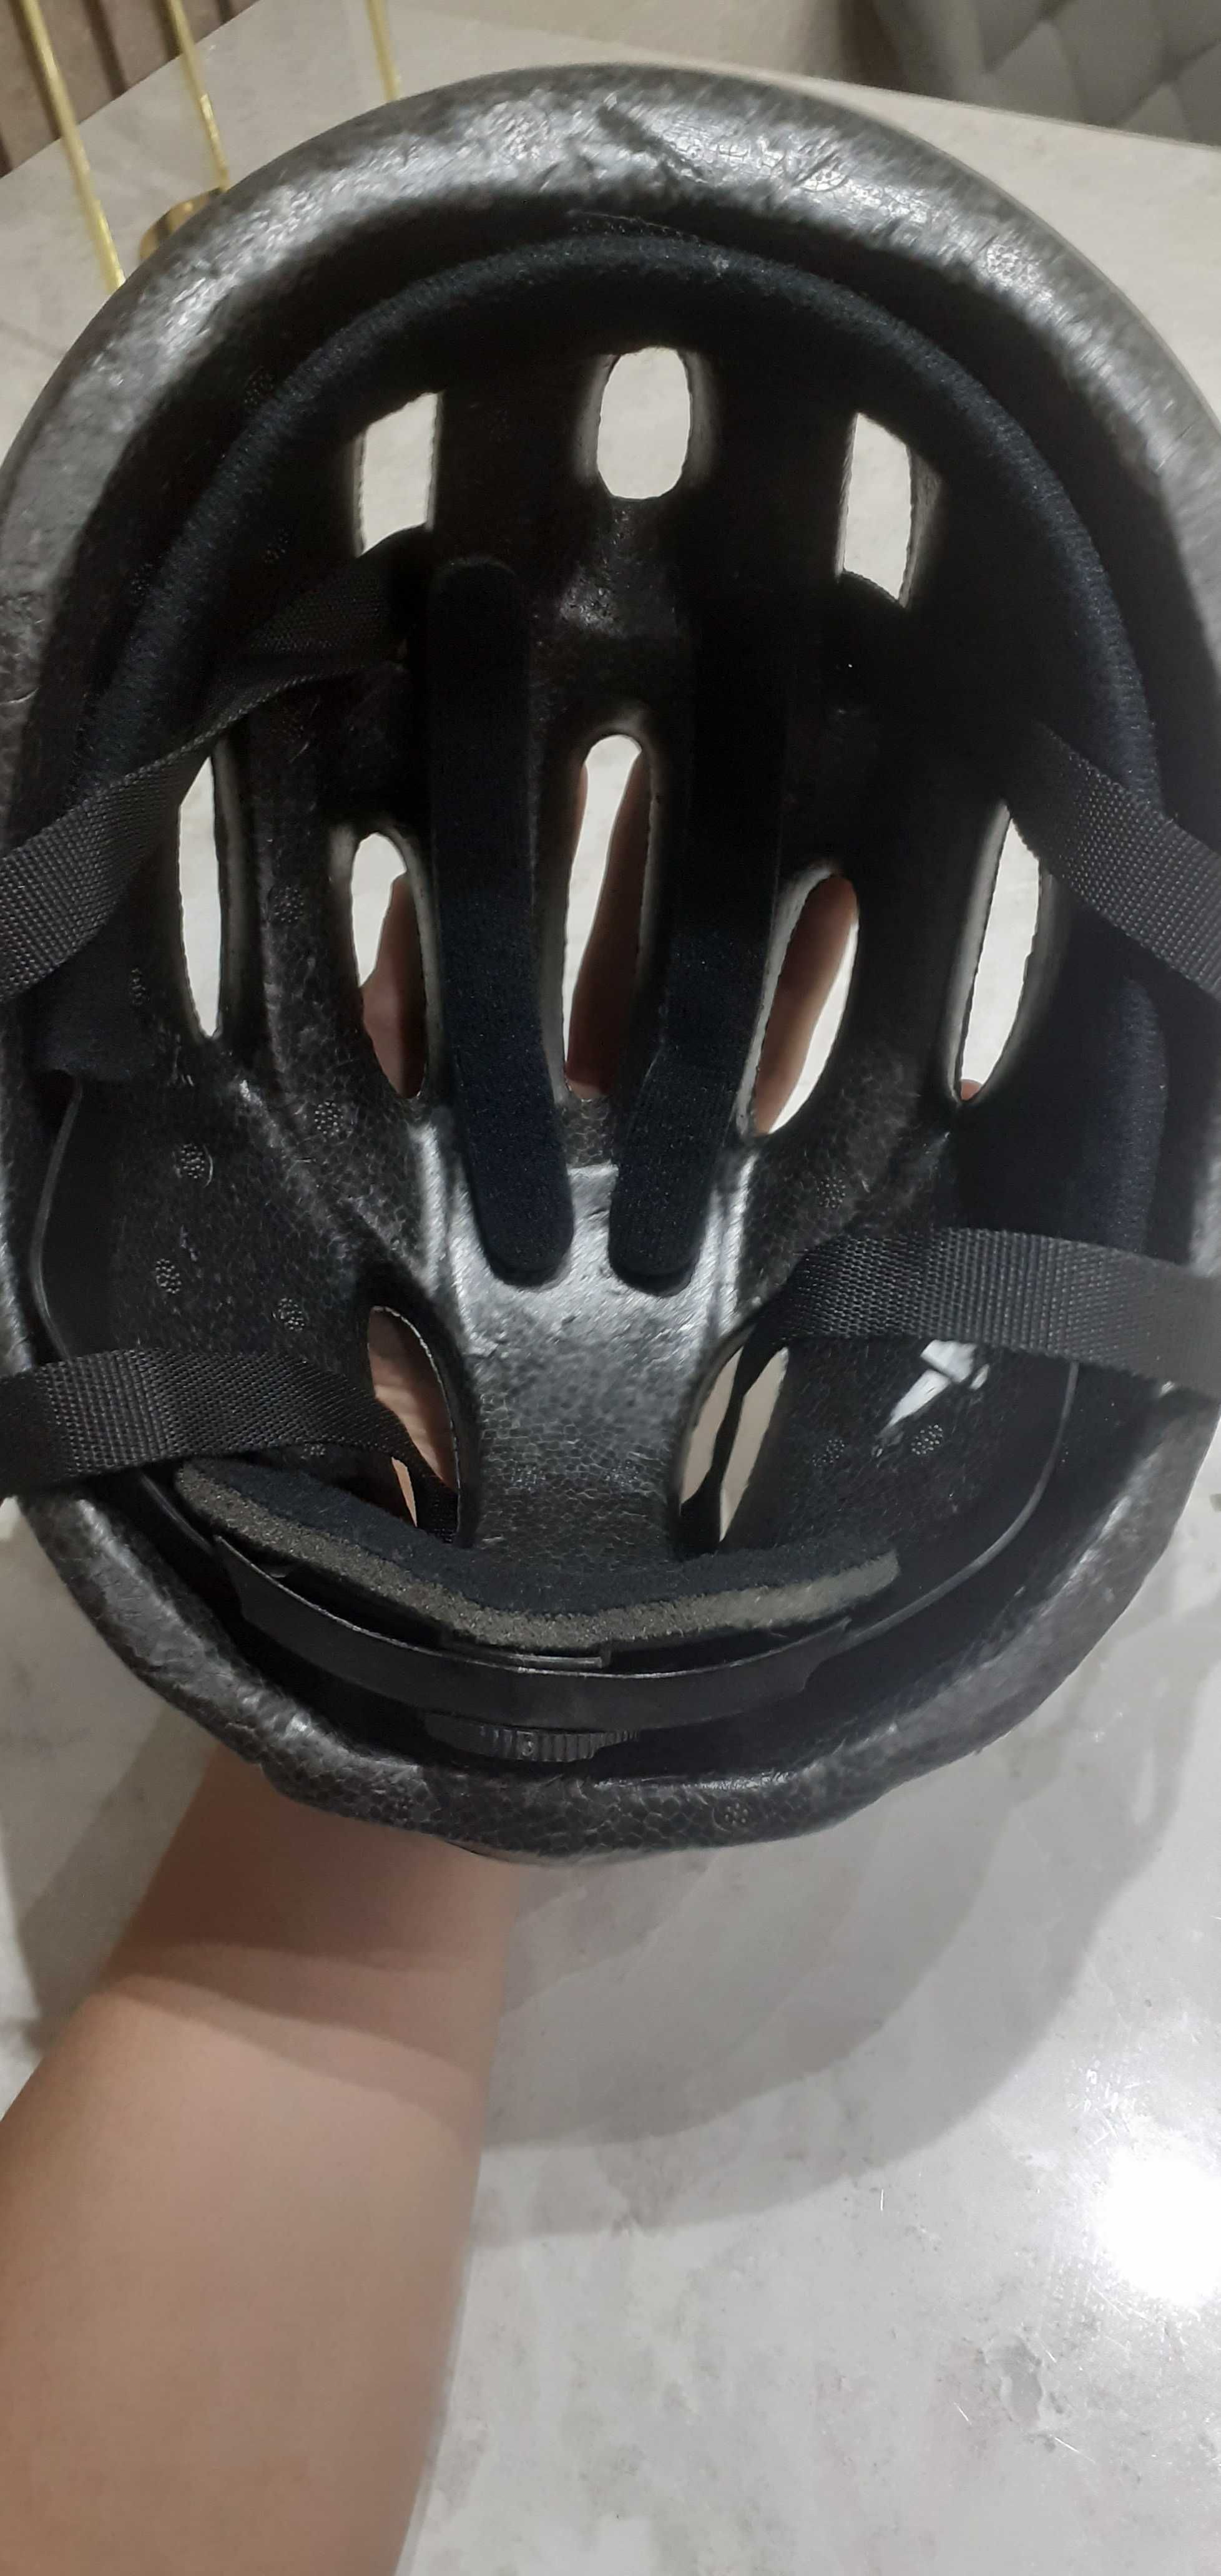 Продам шлем для велосипеда REACTION состояние хорошее почти не носил